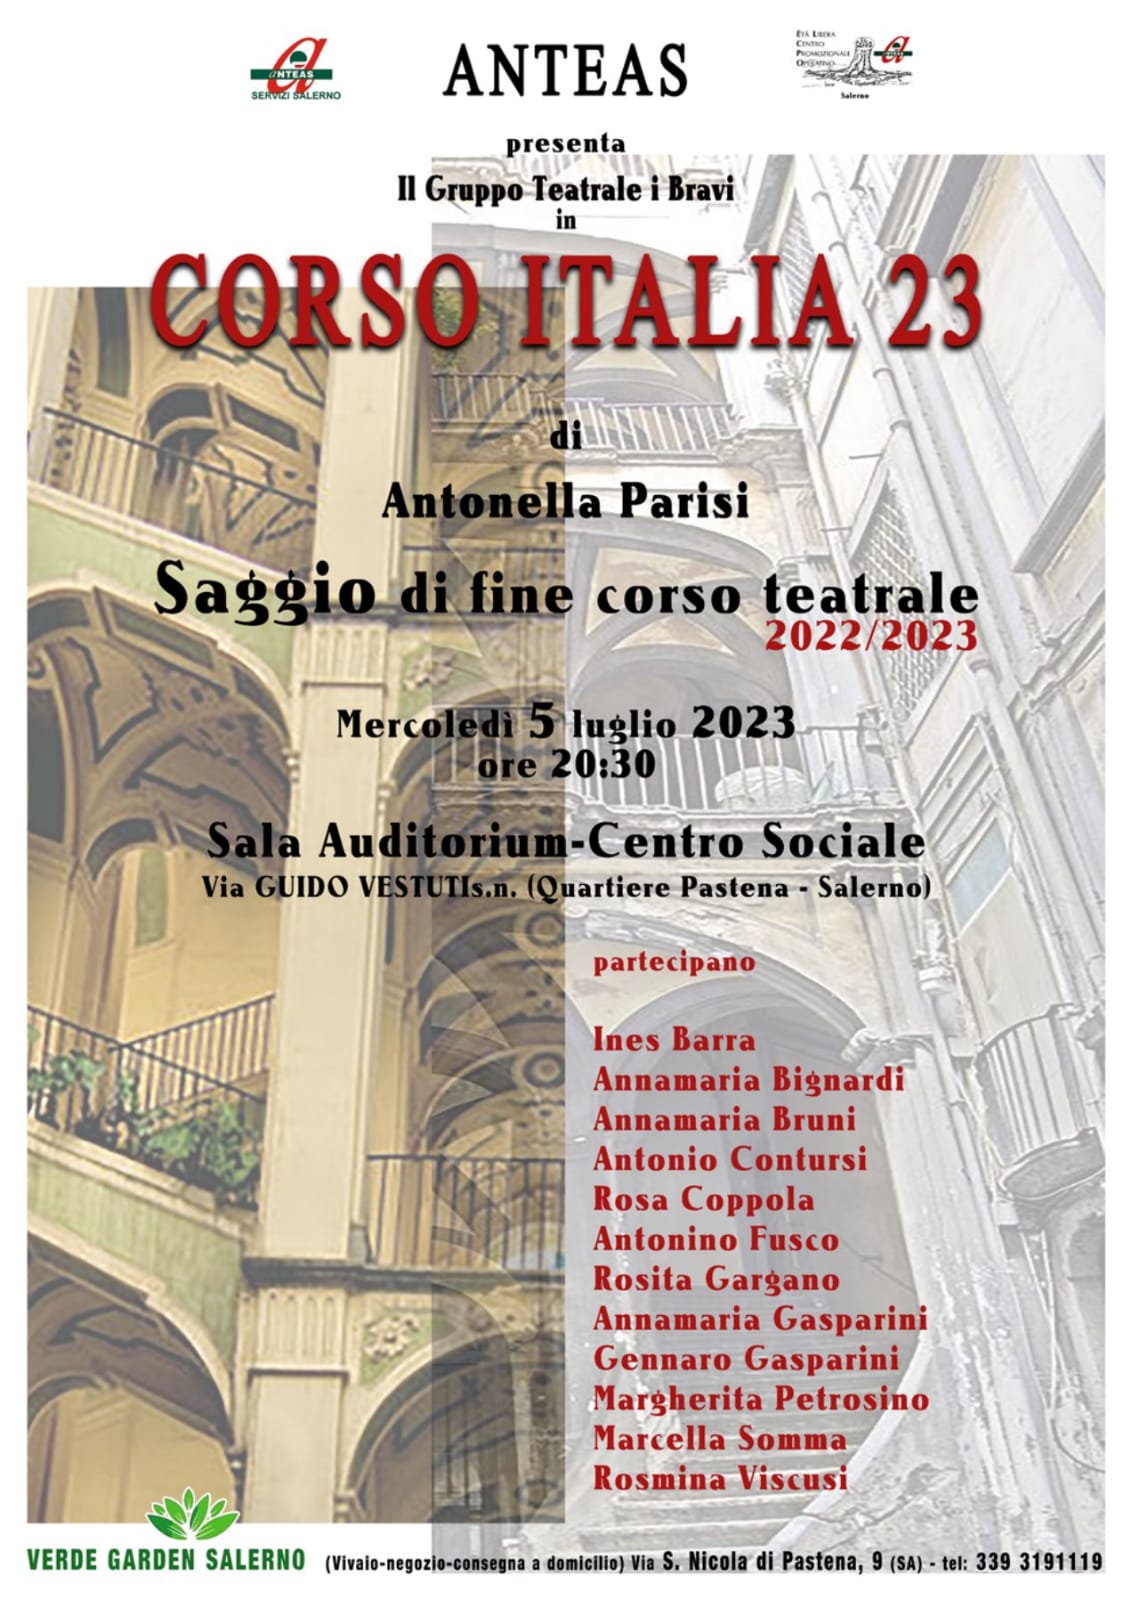 Salerno: a Centro Sociale “Corso Italia, 23” di Antonella Parisi